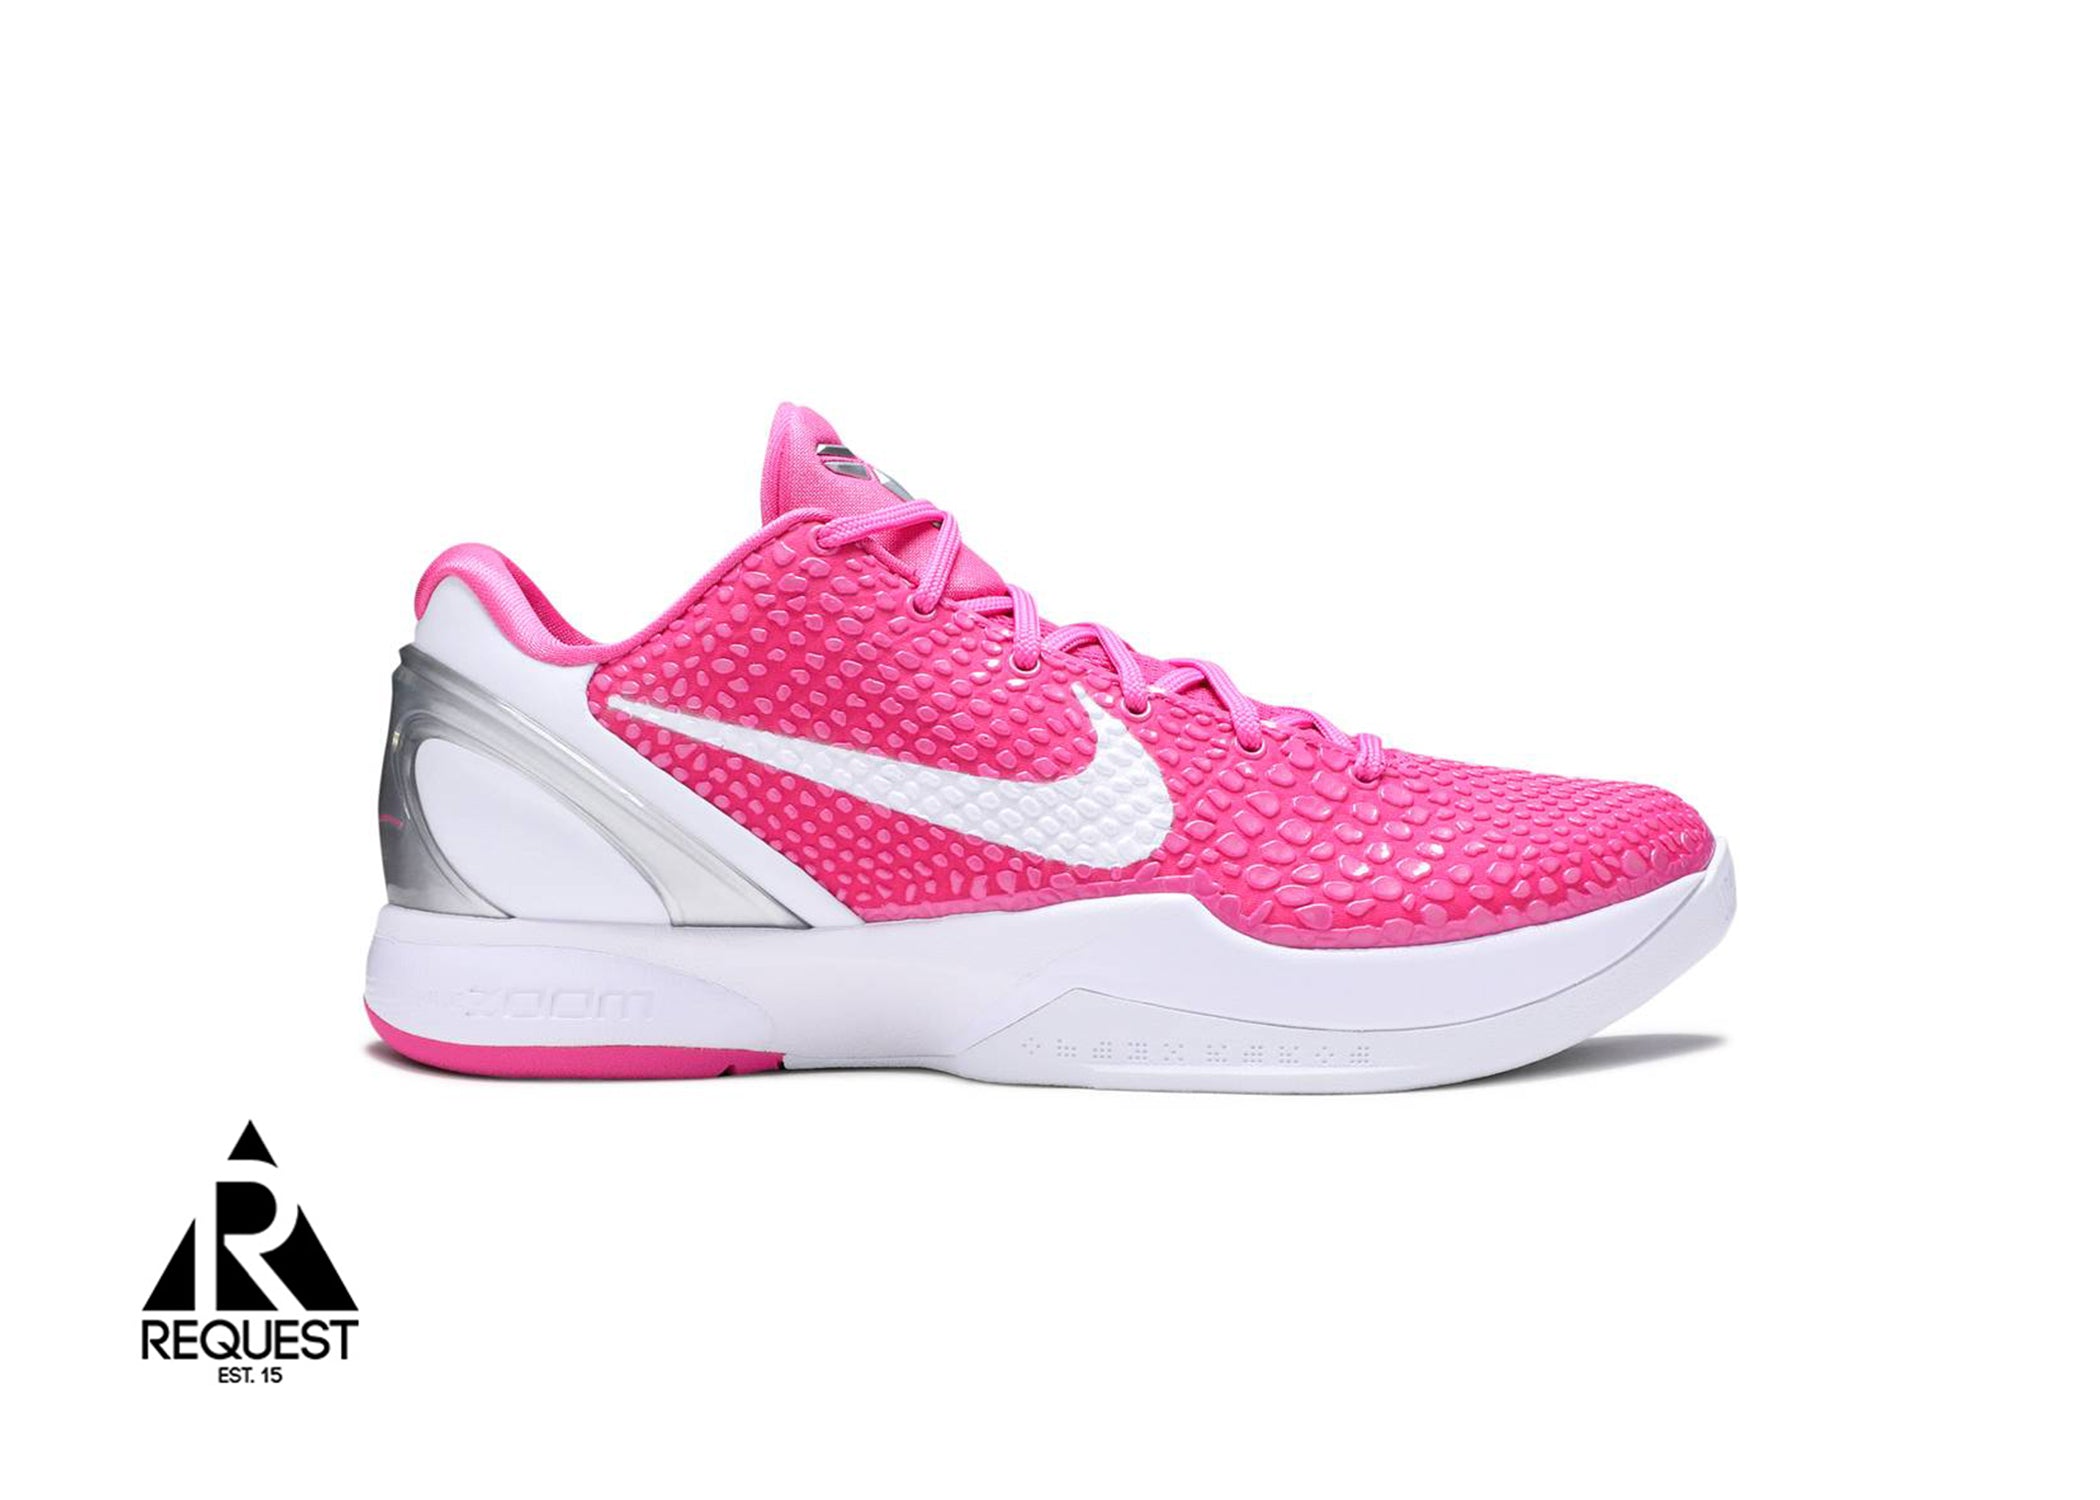 Nike Zoom Kobe VI Protro “Think Pink" (2021)